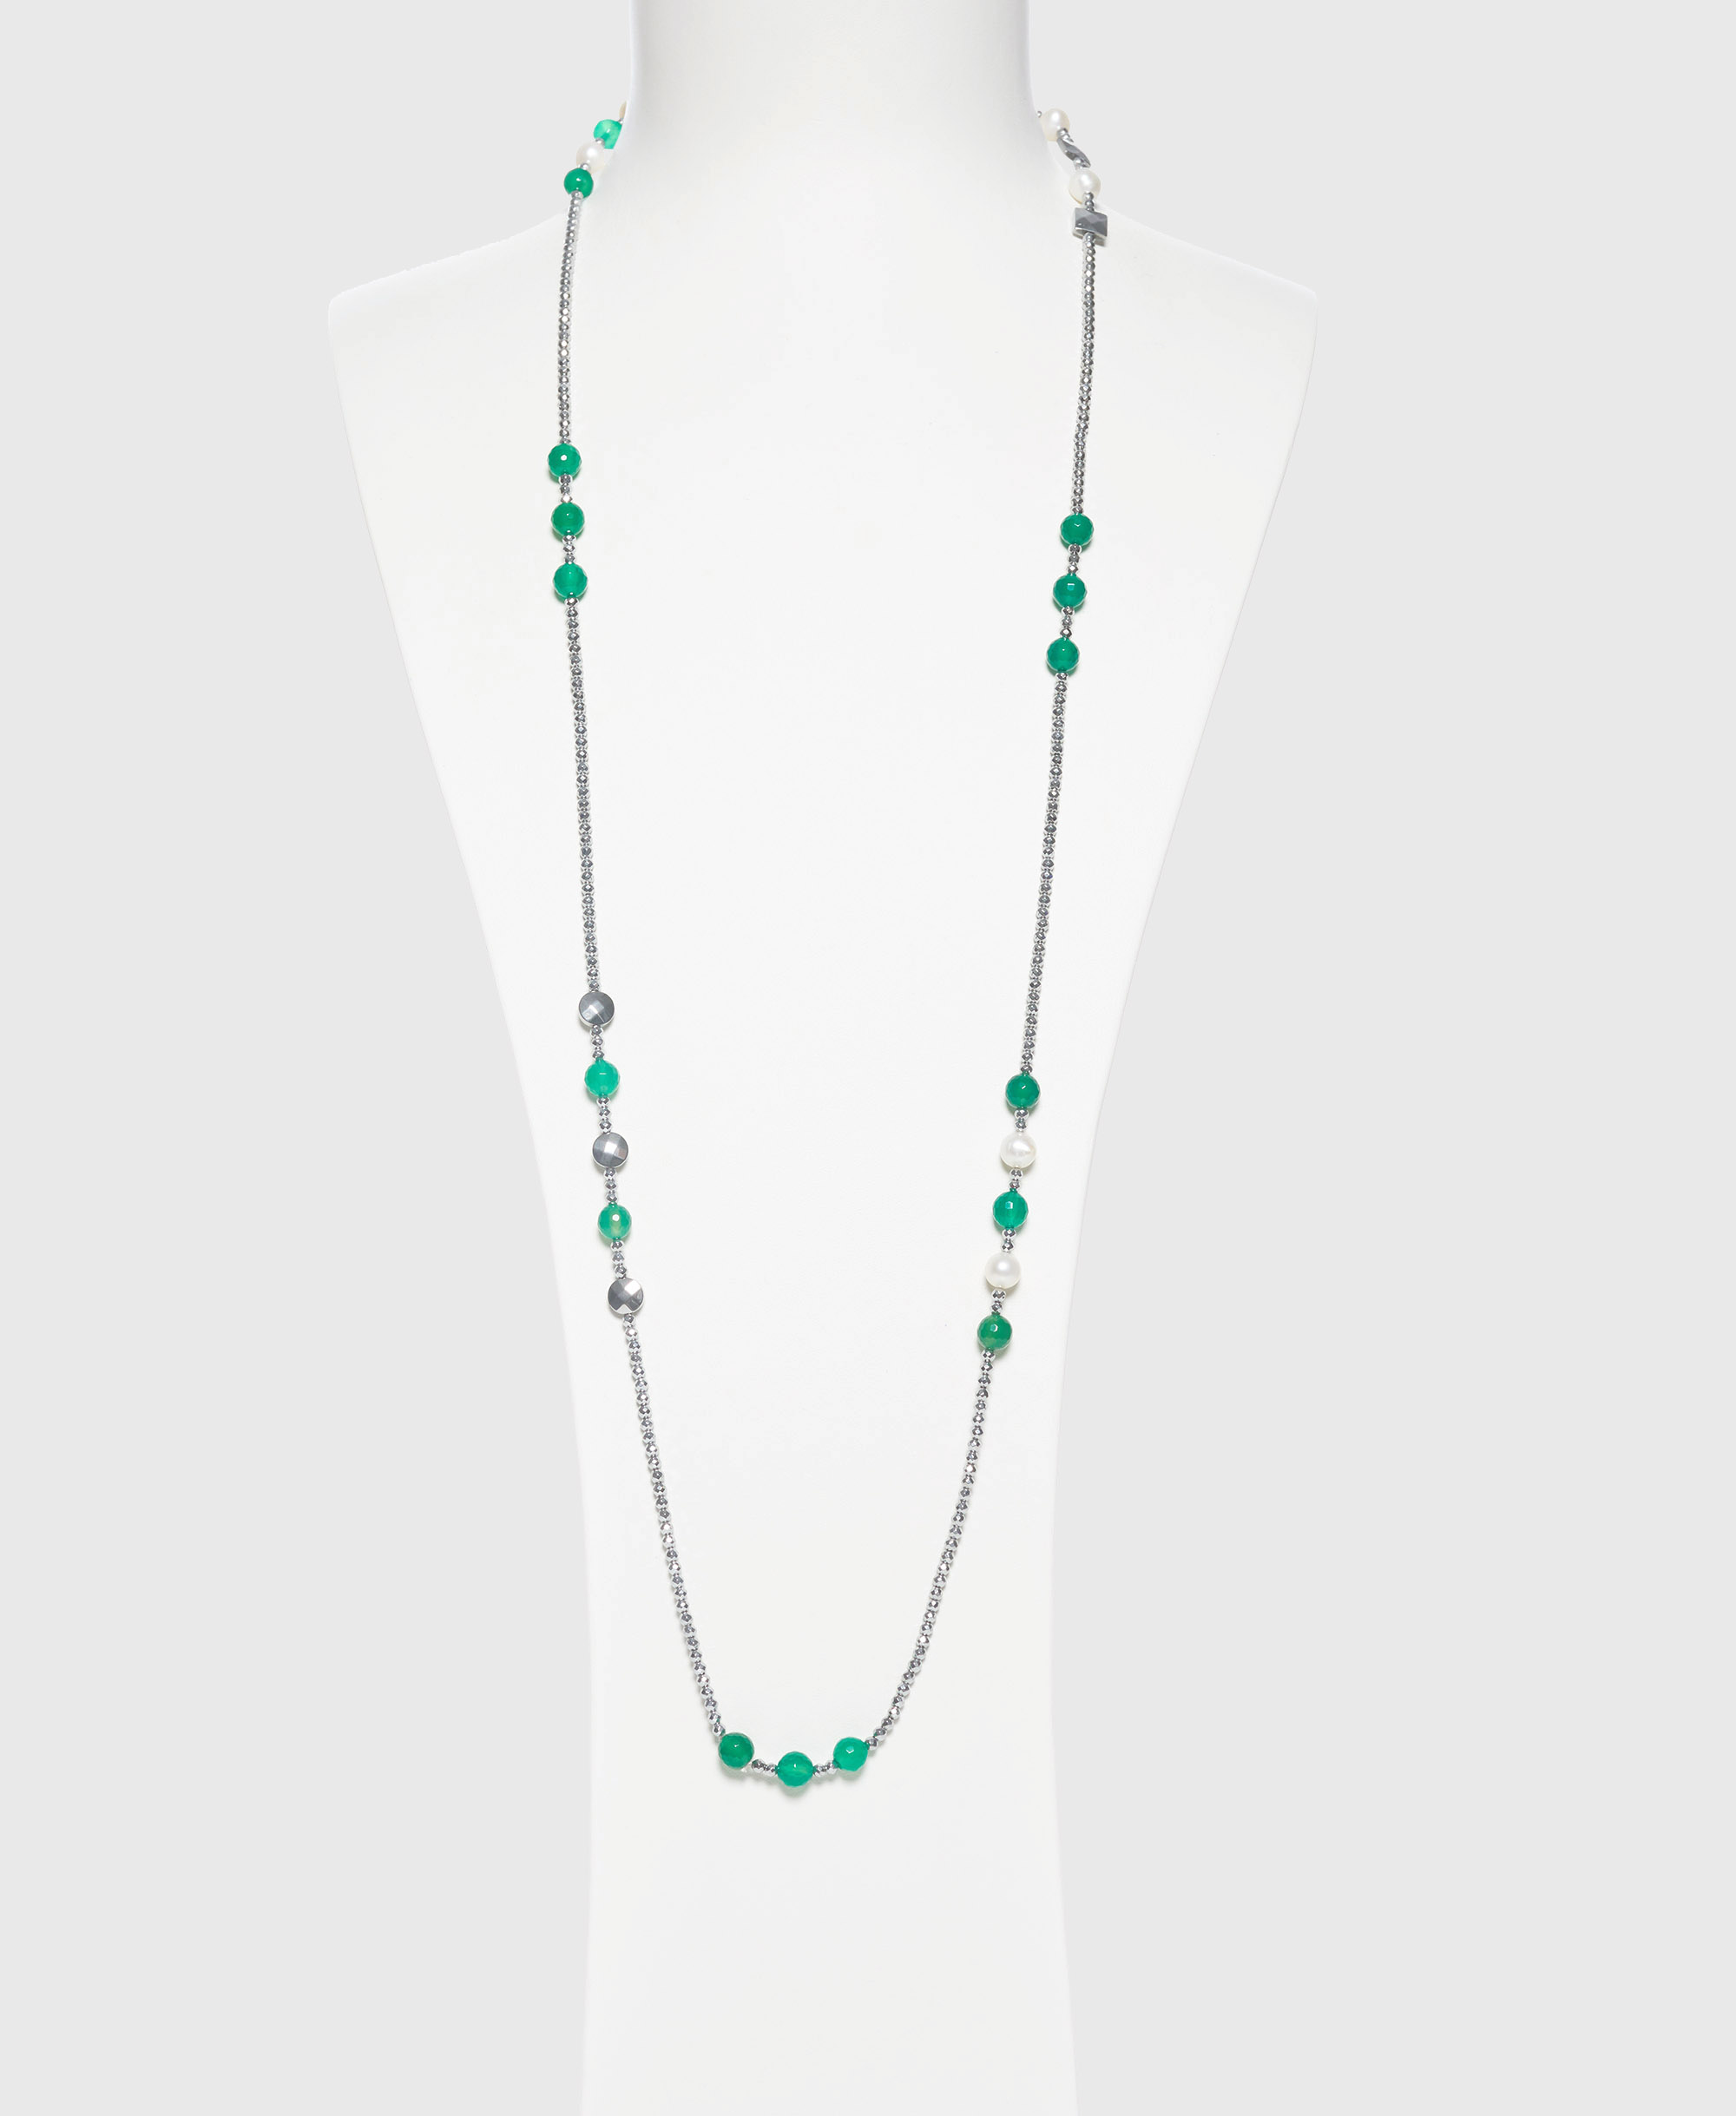 Collana medio lunga in Agata Verde, perle ed Ematite